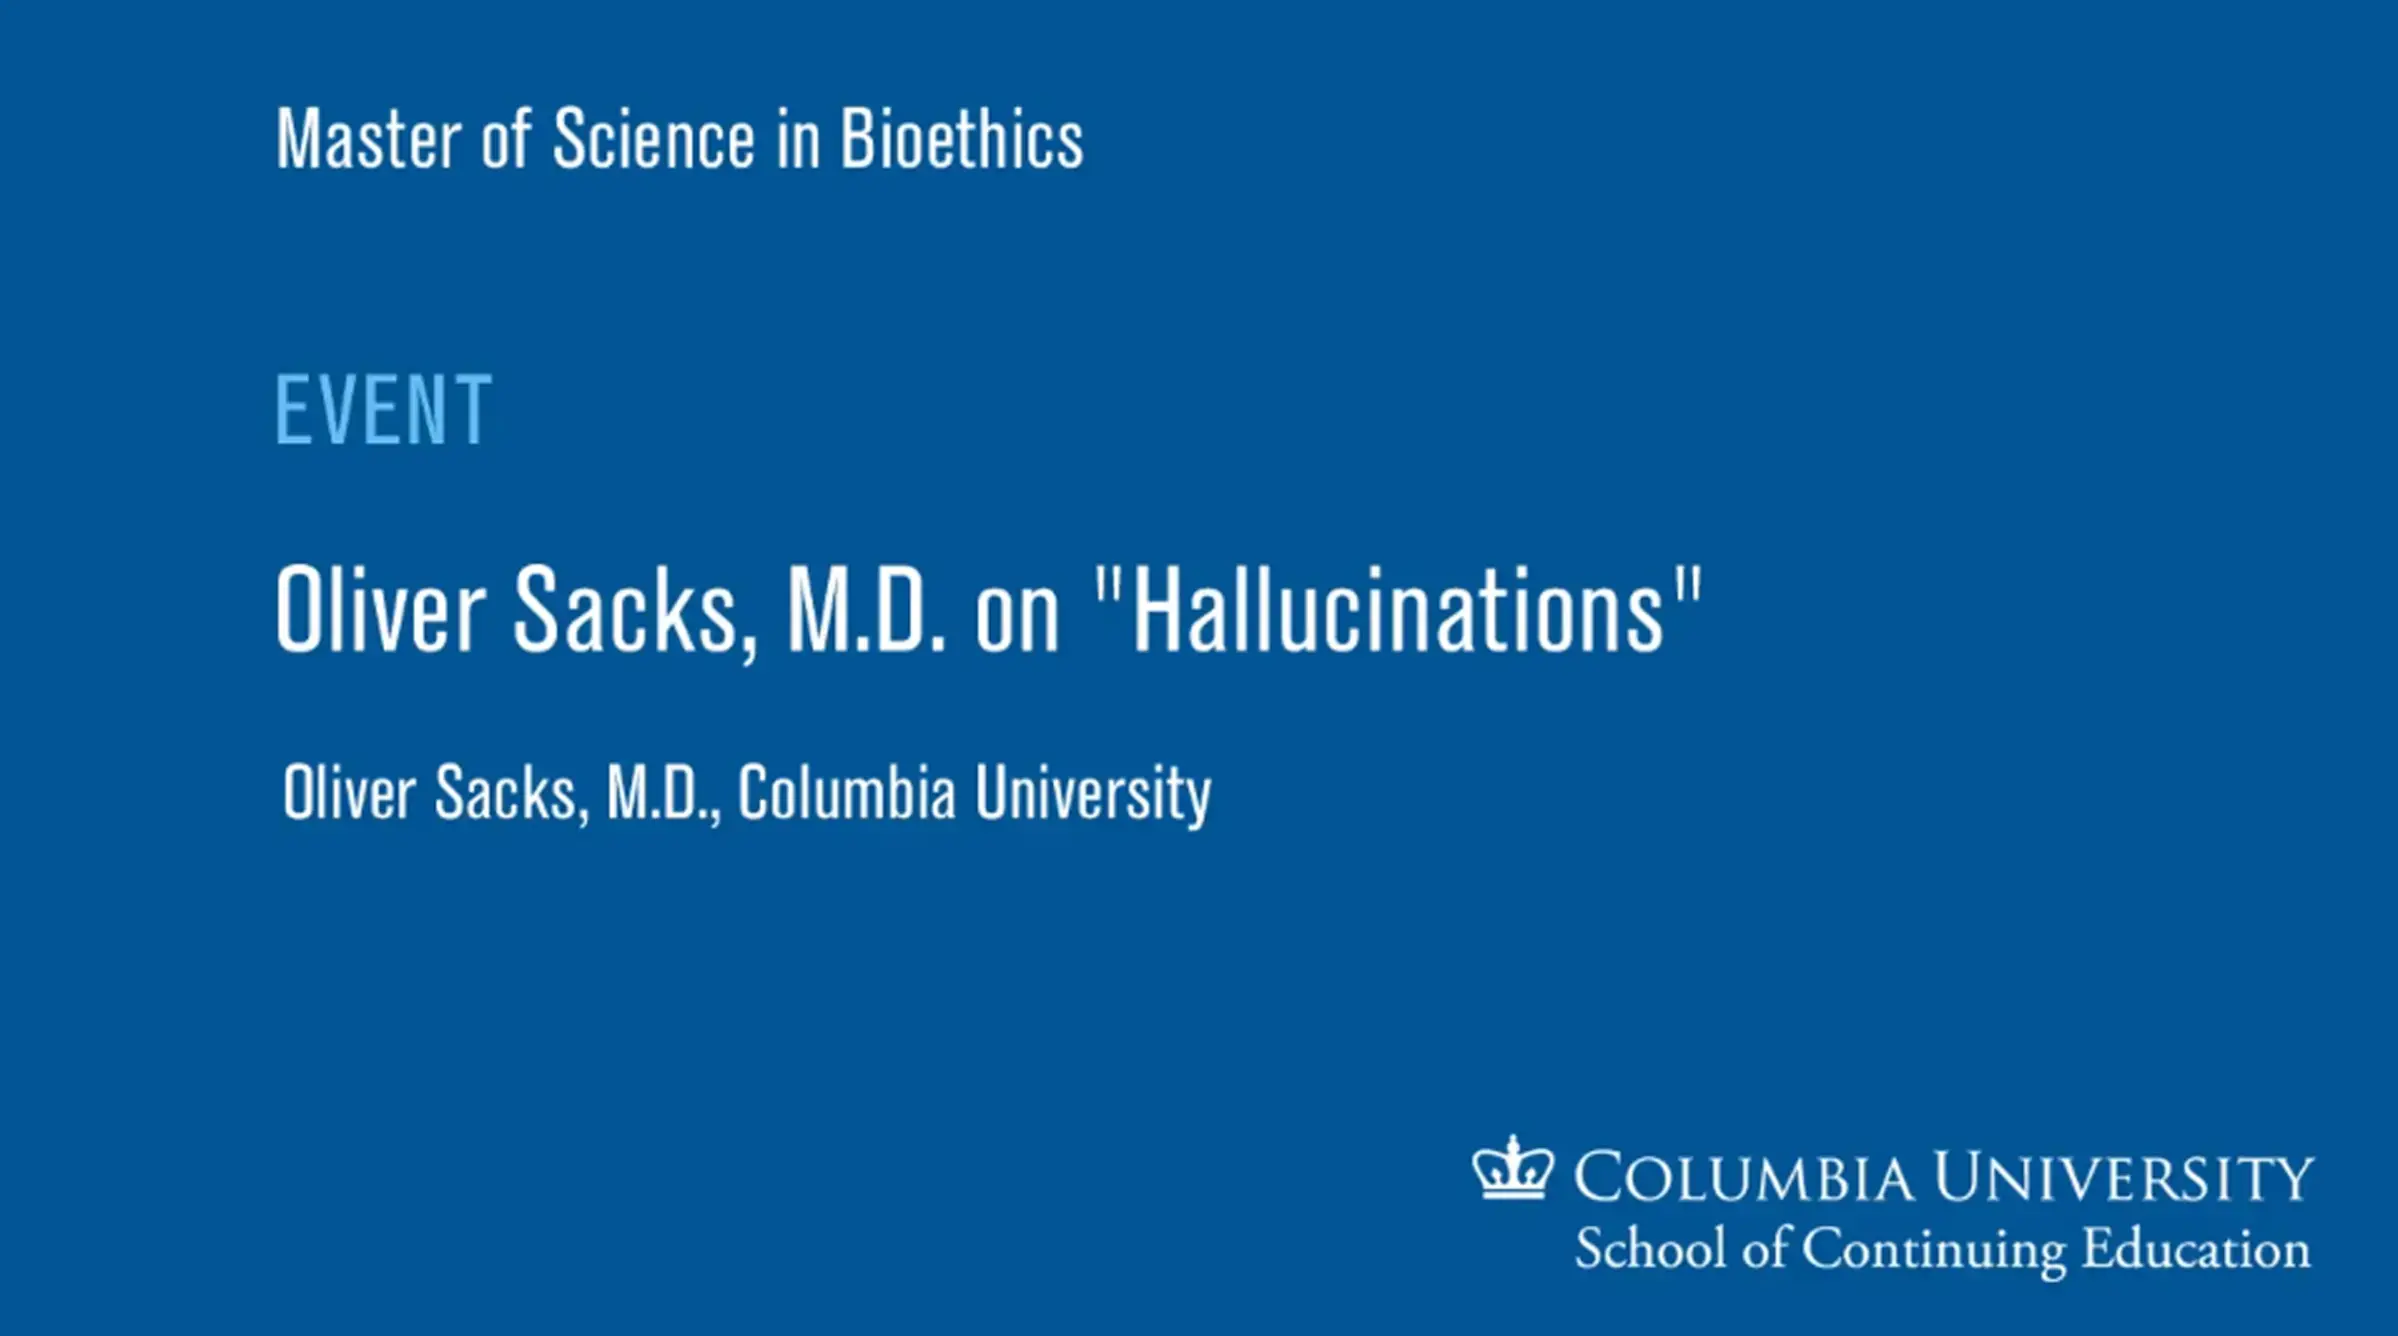 Oliver Sacks, M.D. on “Hallucinations”